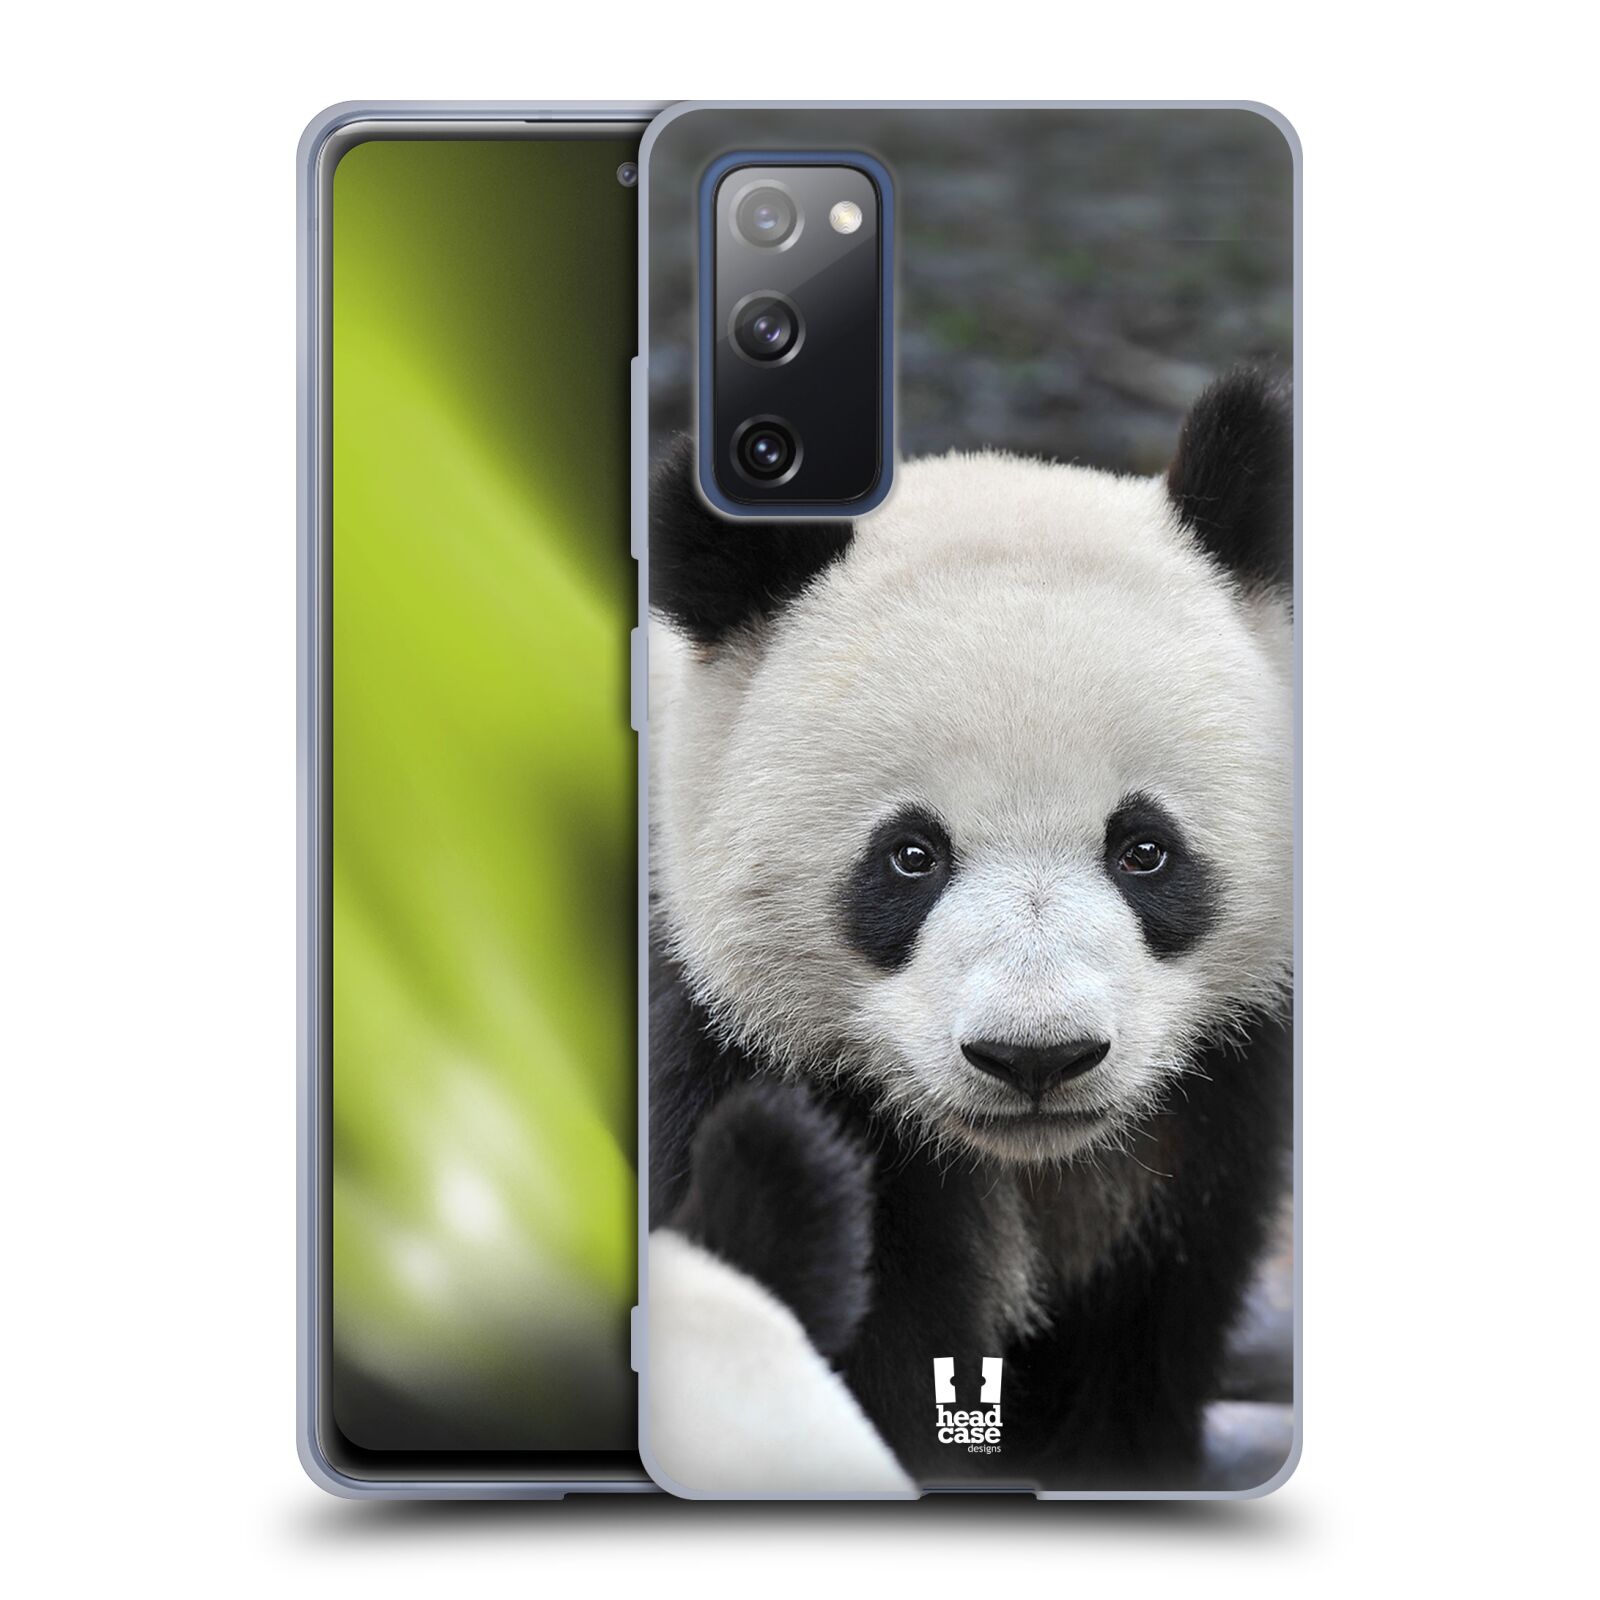 Plastový obal HEAD CASE na mobil Samsung Galaxy S20 FE / S20 FE 5G vzor Divočina, Divoký život a zvířata foto MEDVĚD PANDA